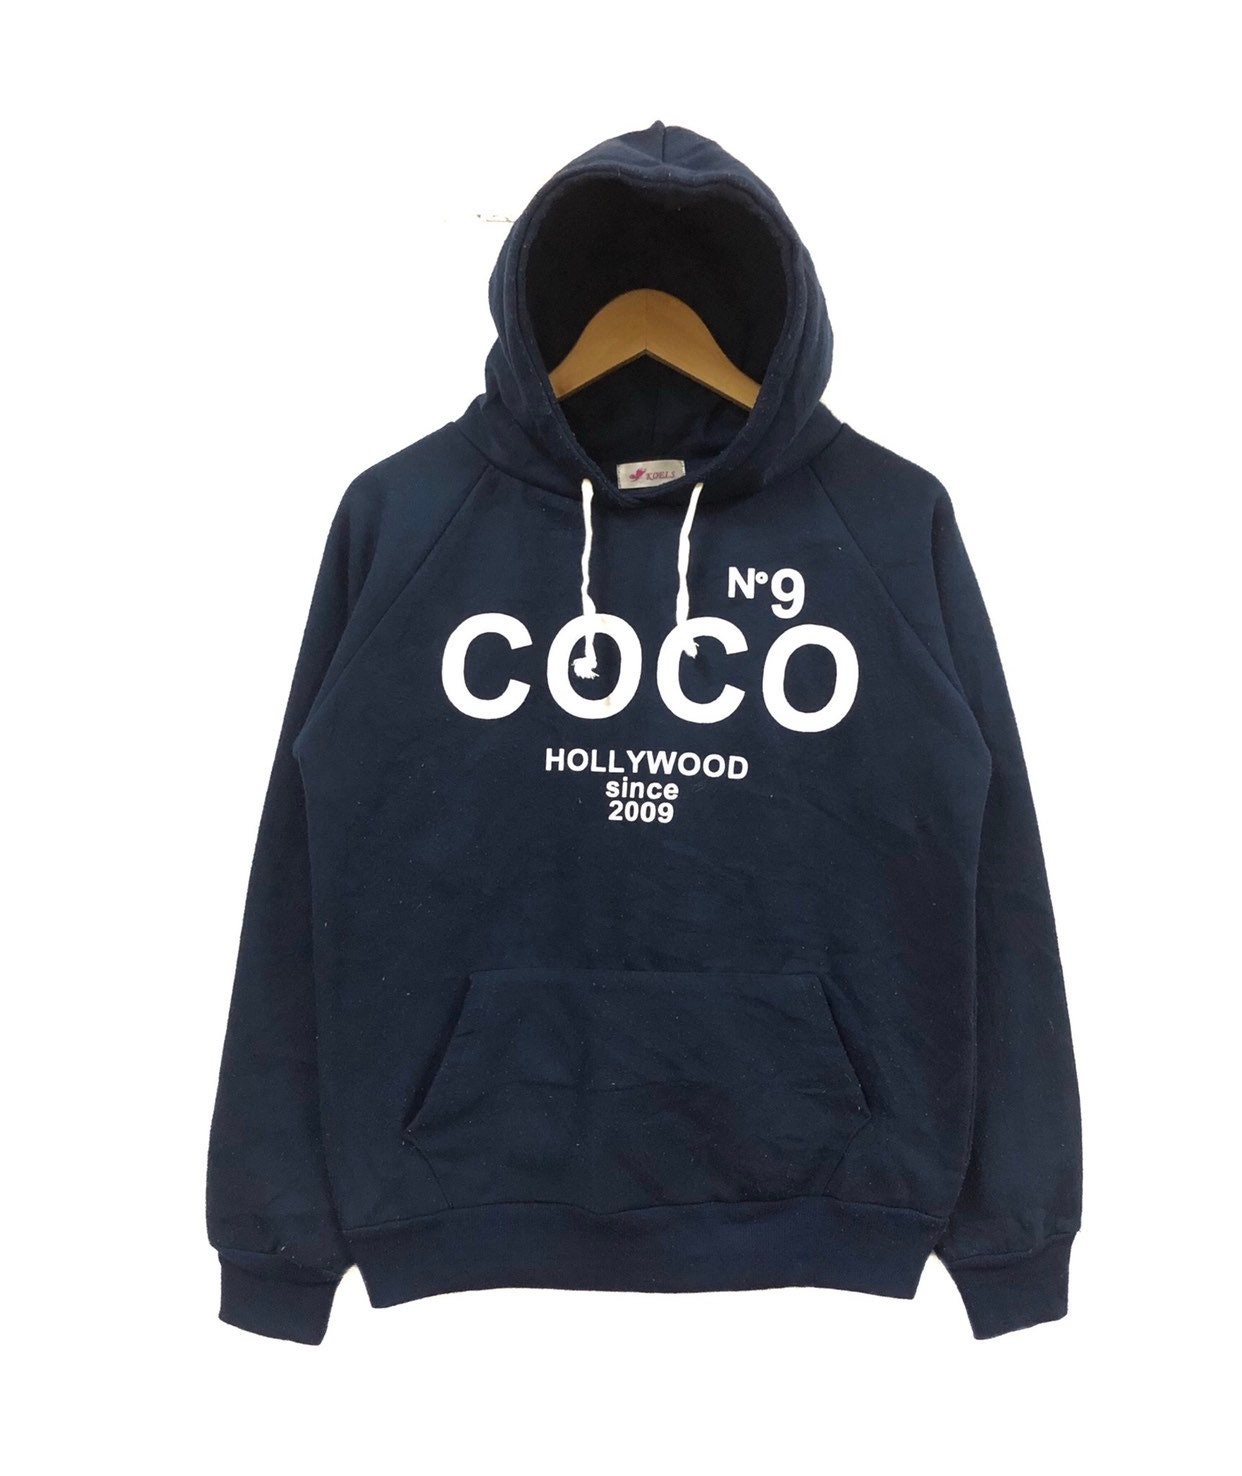 Coco No9/coco Hollywood/coco Chanel Parody/pullover Hoddie 